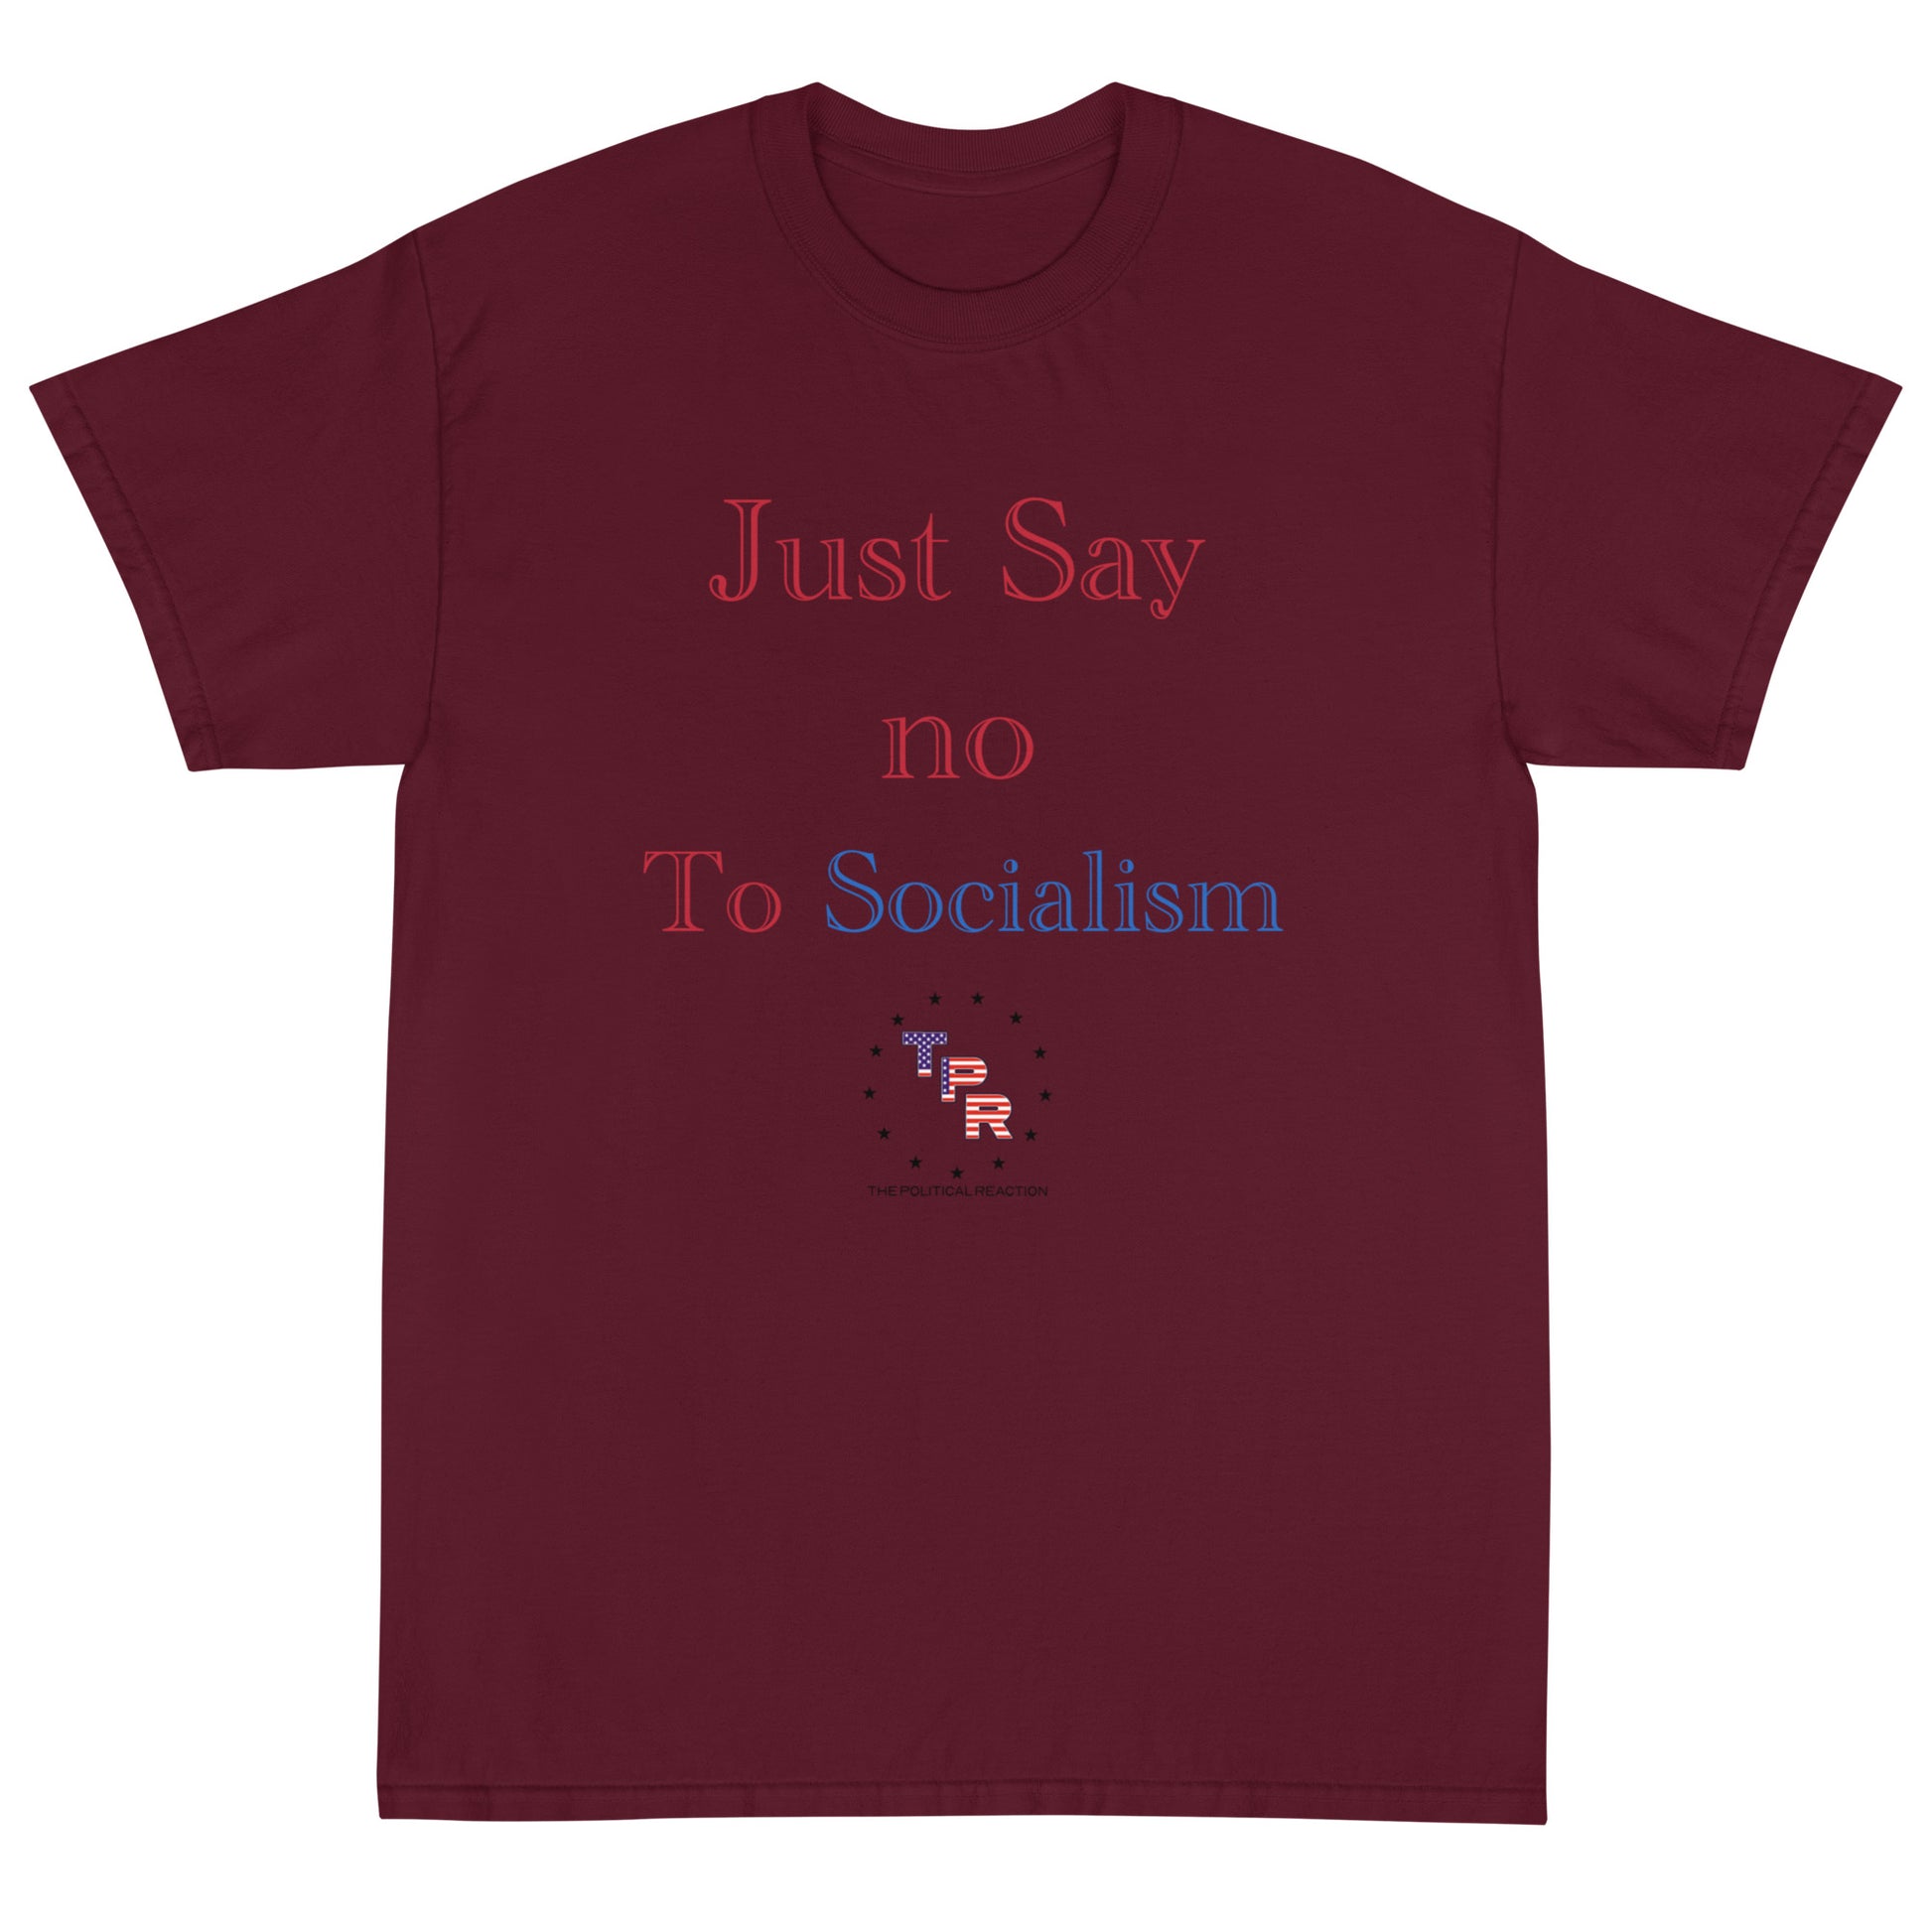 Just-say-no-to-socialism-t-shirt-Maroon